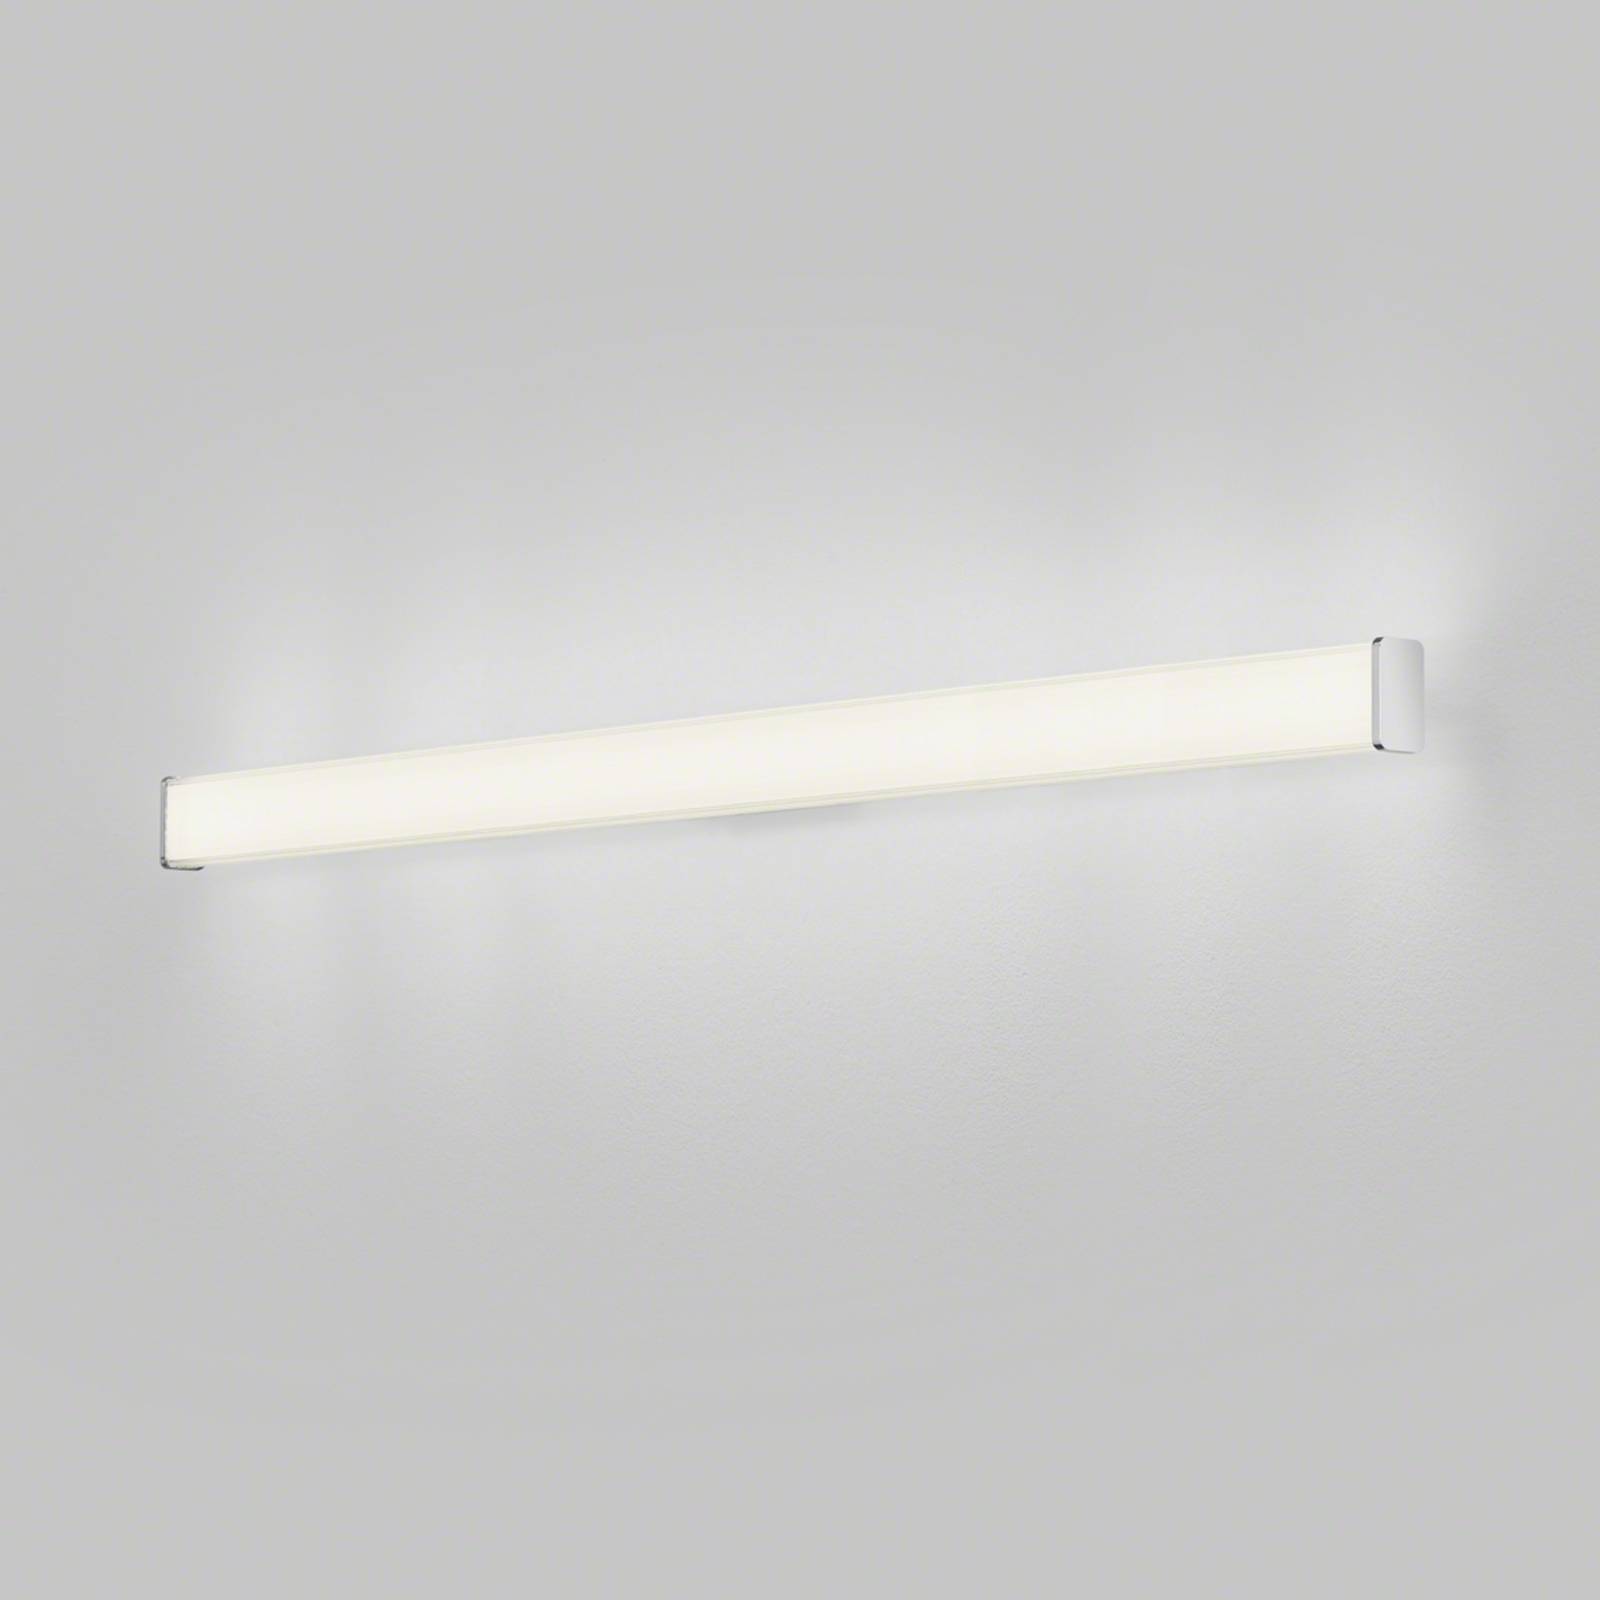 LED fürdőszoba fali világítás Alla IP44 120cm króm